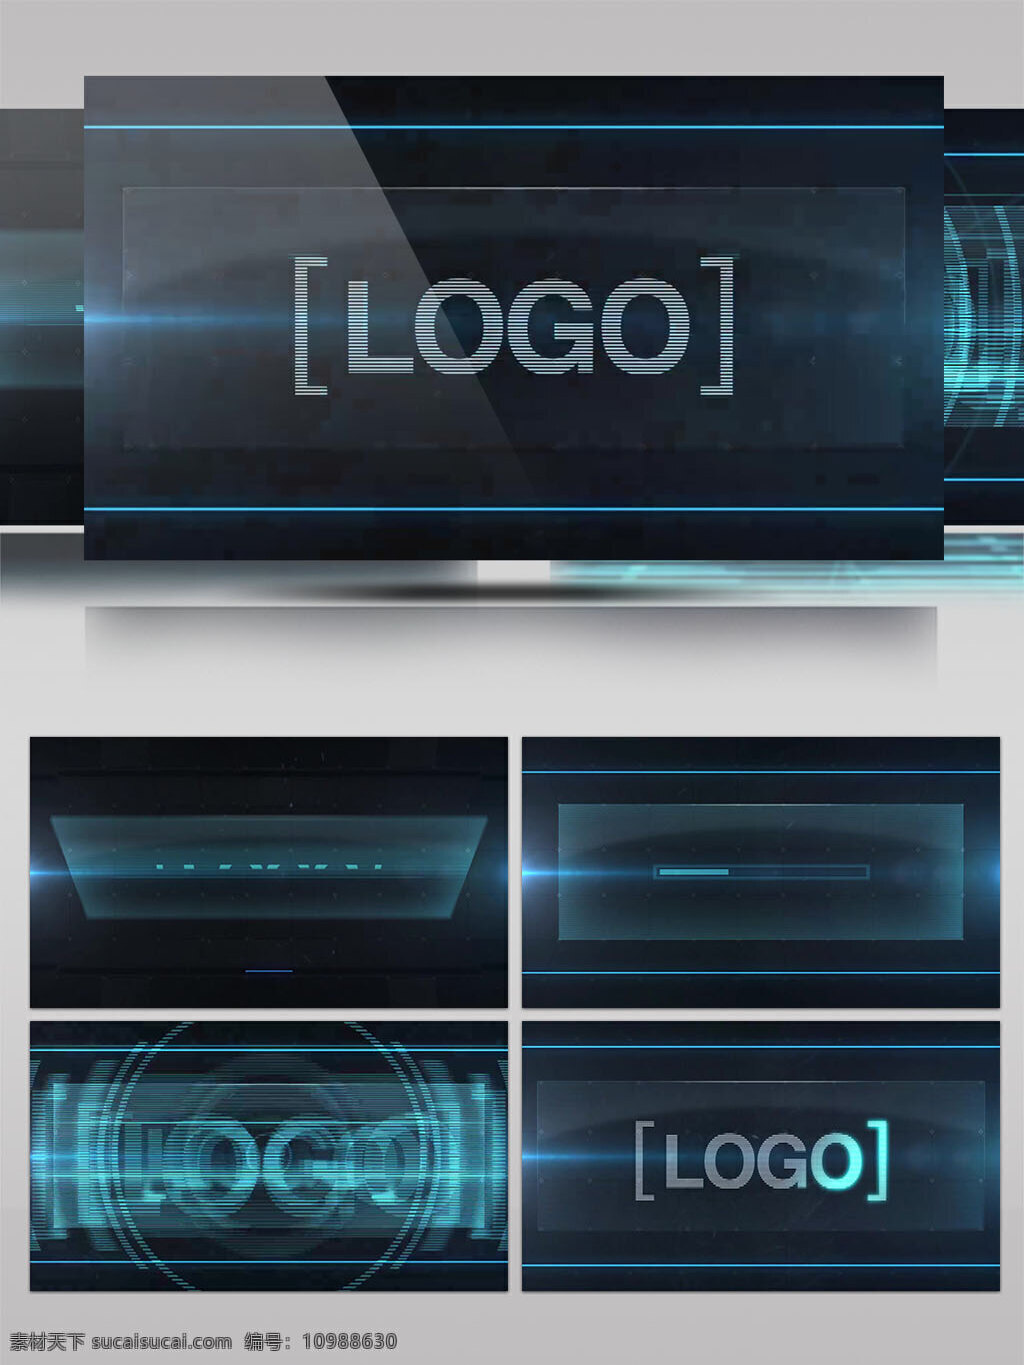 蓝色 科技 感 电流 粒子 logo 演绎 ae 模板 科技感 ae模板 蓝色科技感 电流粒子 logo演绎 科技感电流 粒子logo 演绎模板